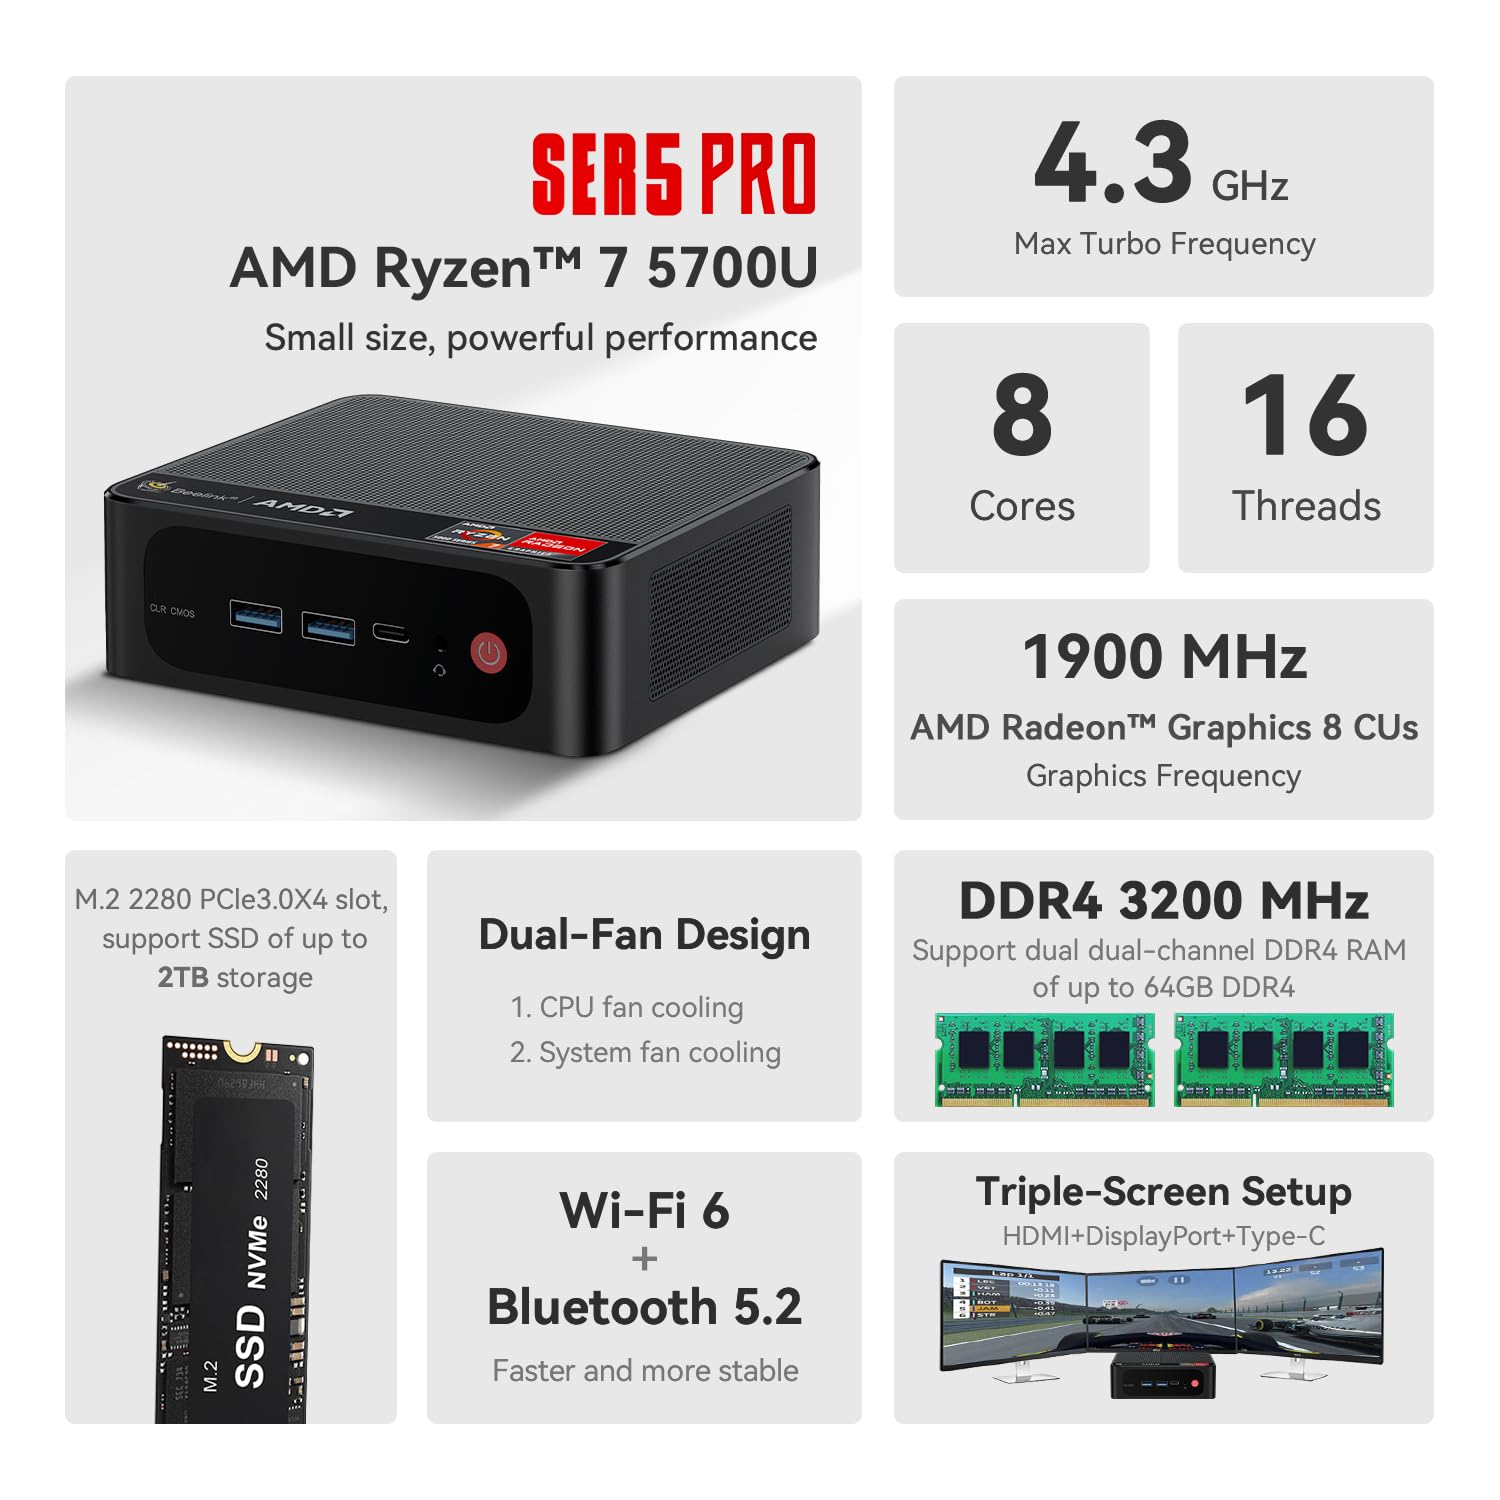 Beelink Mini PC, AMD Ryzen 7 5700U(8C/16T, Up to 4.3GHz), 16GB DDR4 RAM 1TB PCIe3.0 x4 SSD, SER5 Pro Mini Desktop Computer Support 4K Triple Display/DP/HDMI/USB 3.2/WiFi 6/BT5.2, Gaming/Office/Home